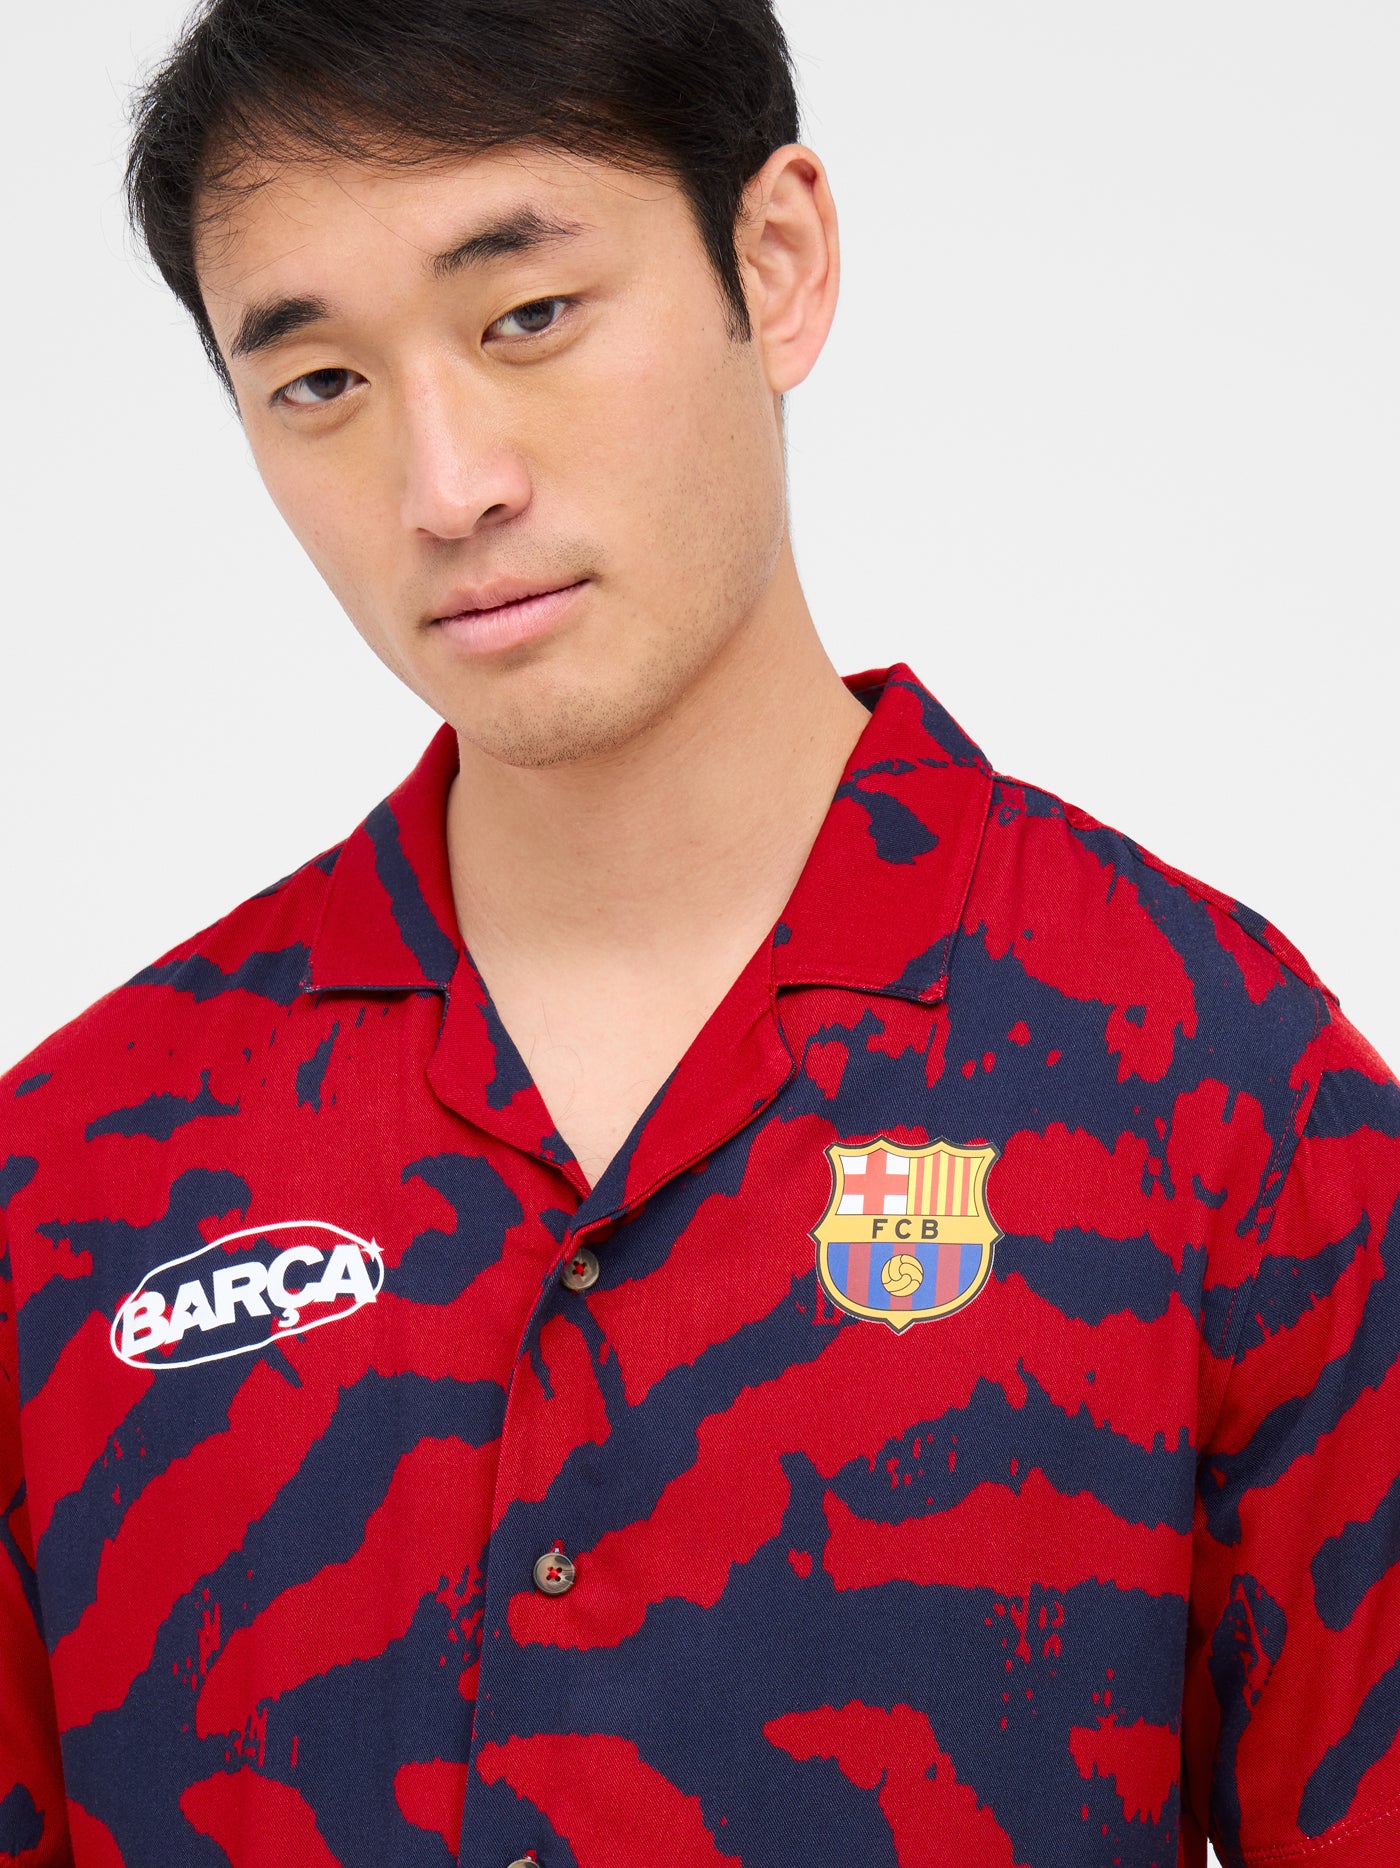 Barça printed shirt